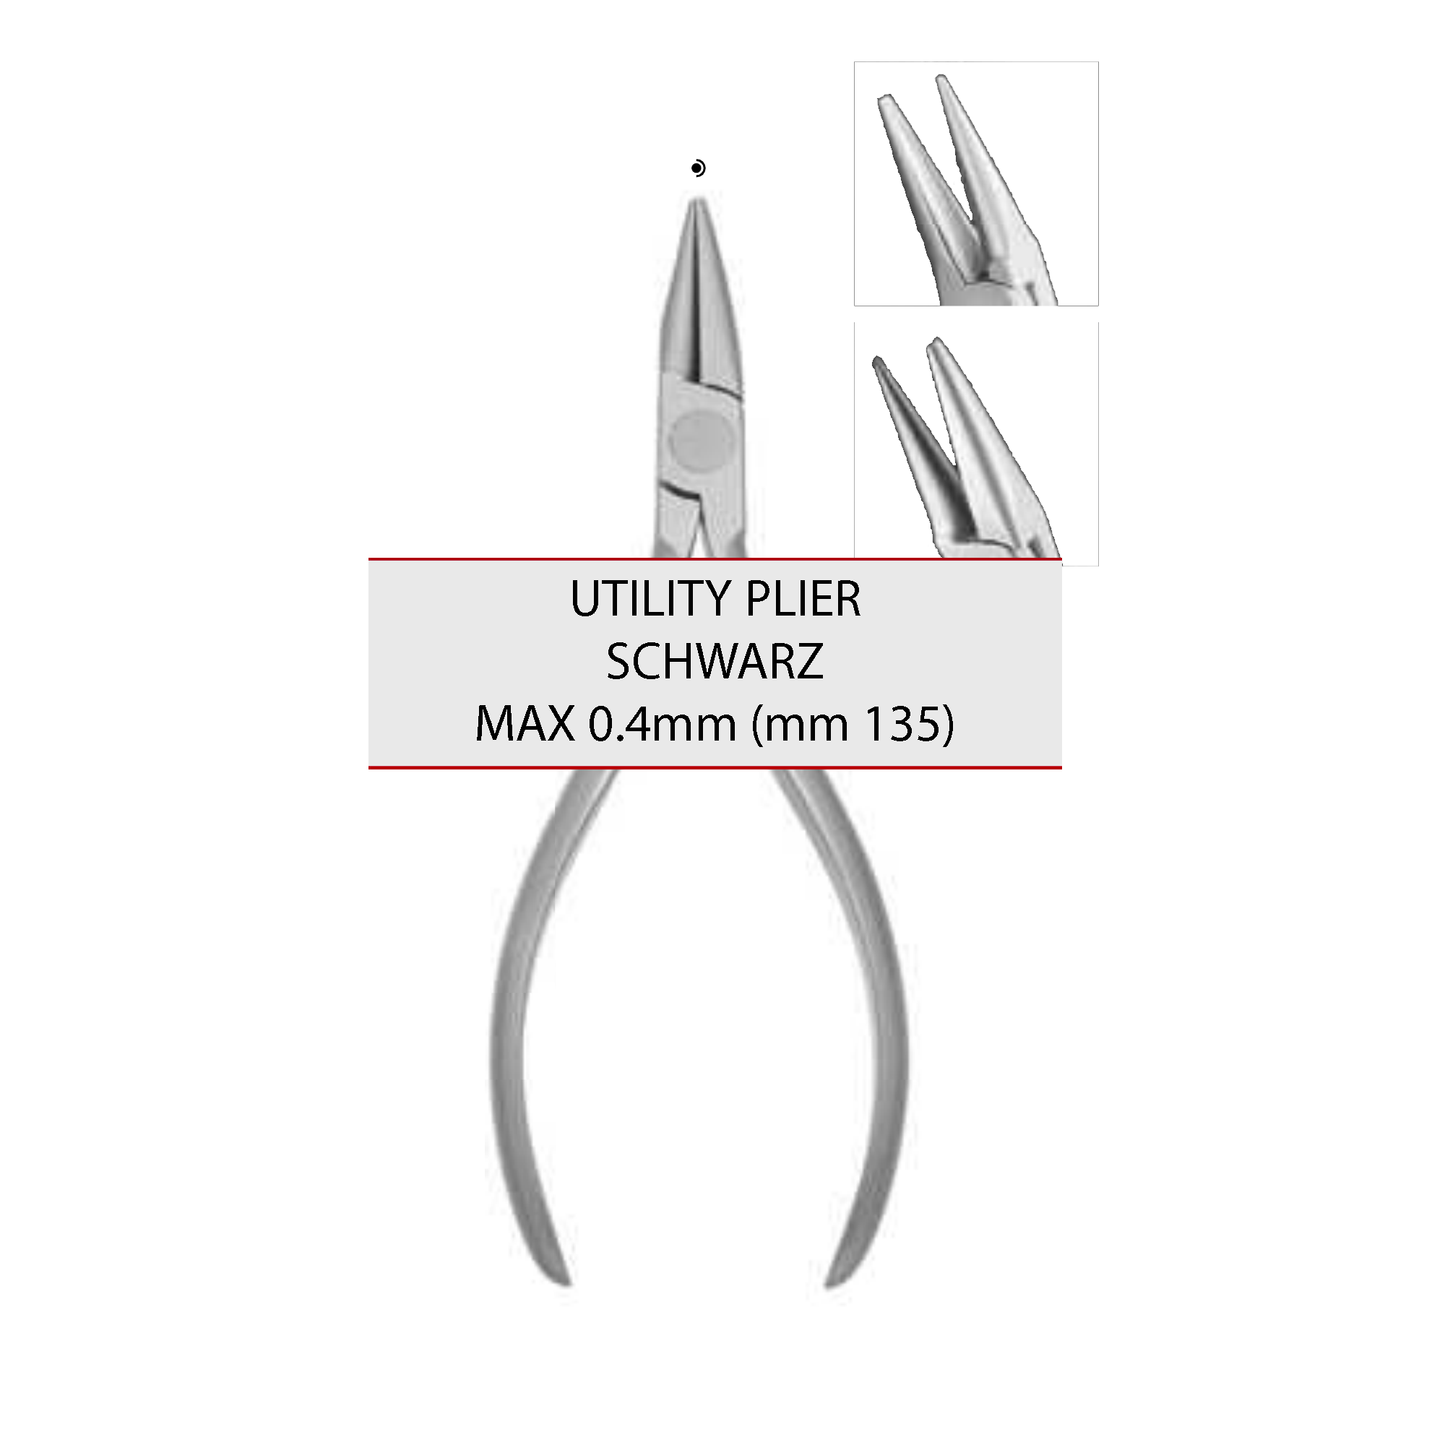 SCHWARZ – MAX 0.4mm (mm 135) Cod 1023-2